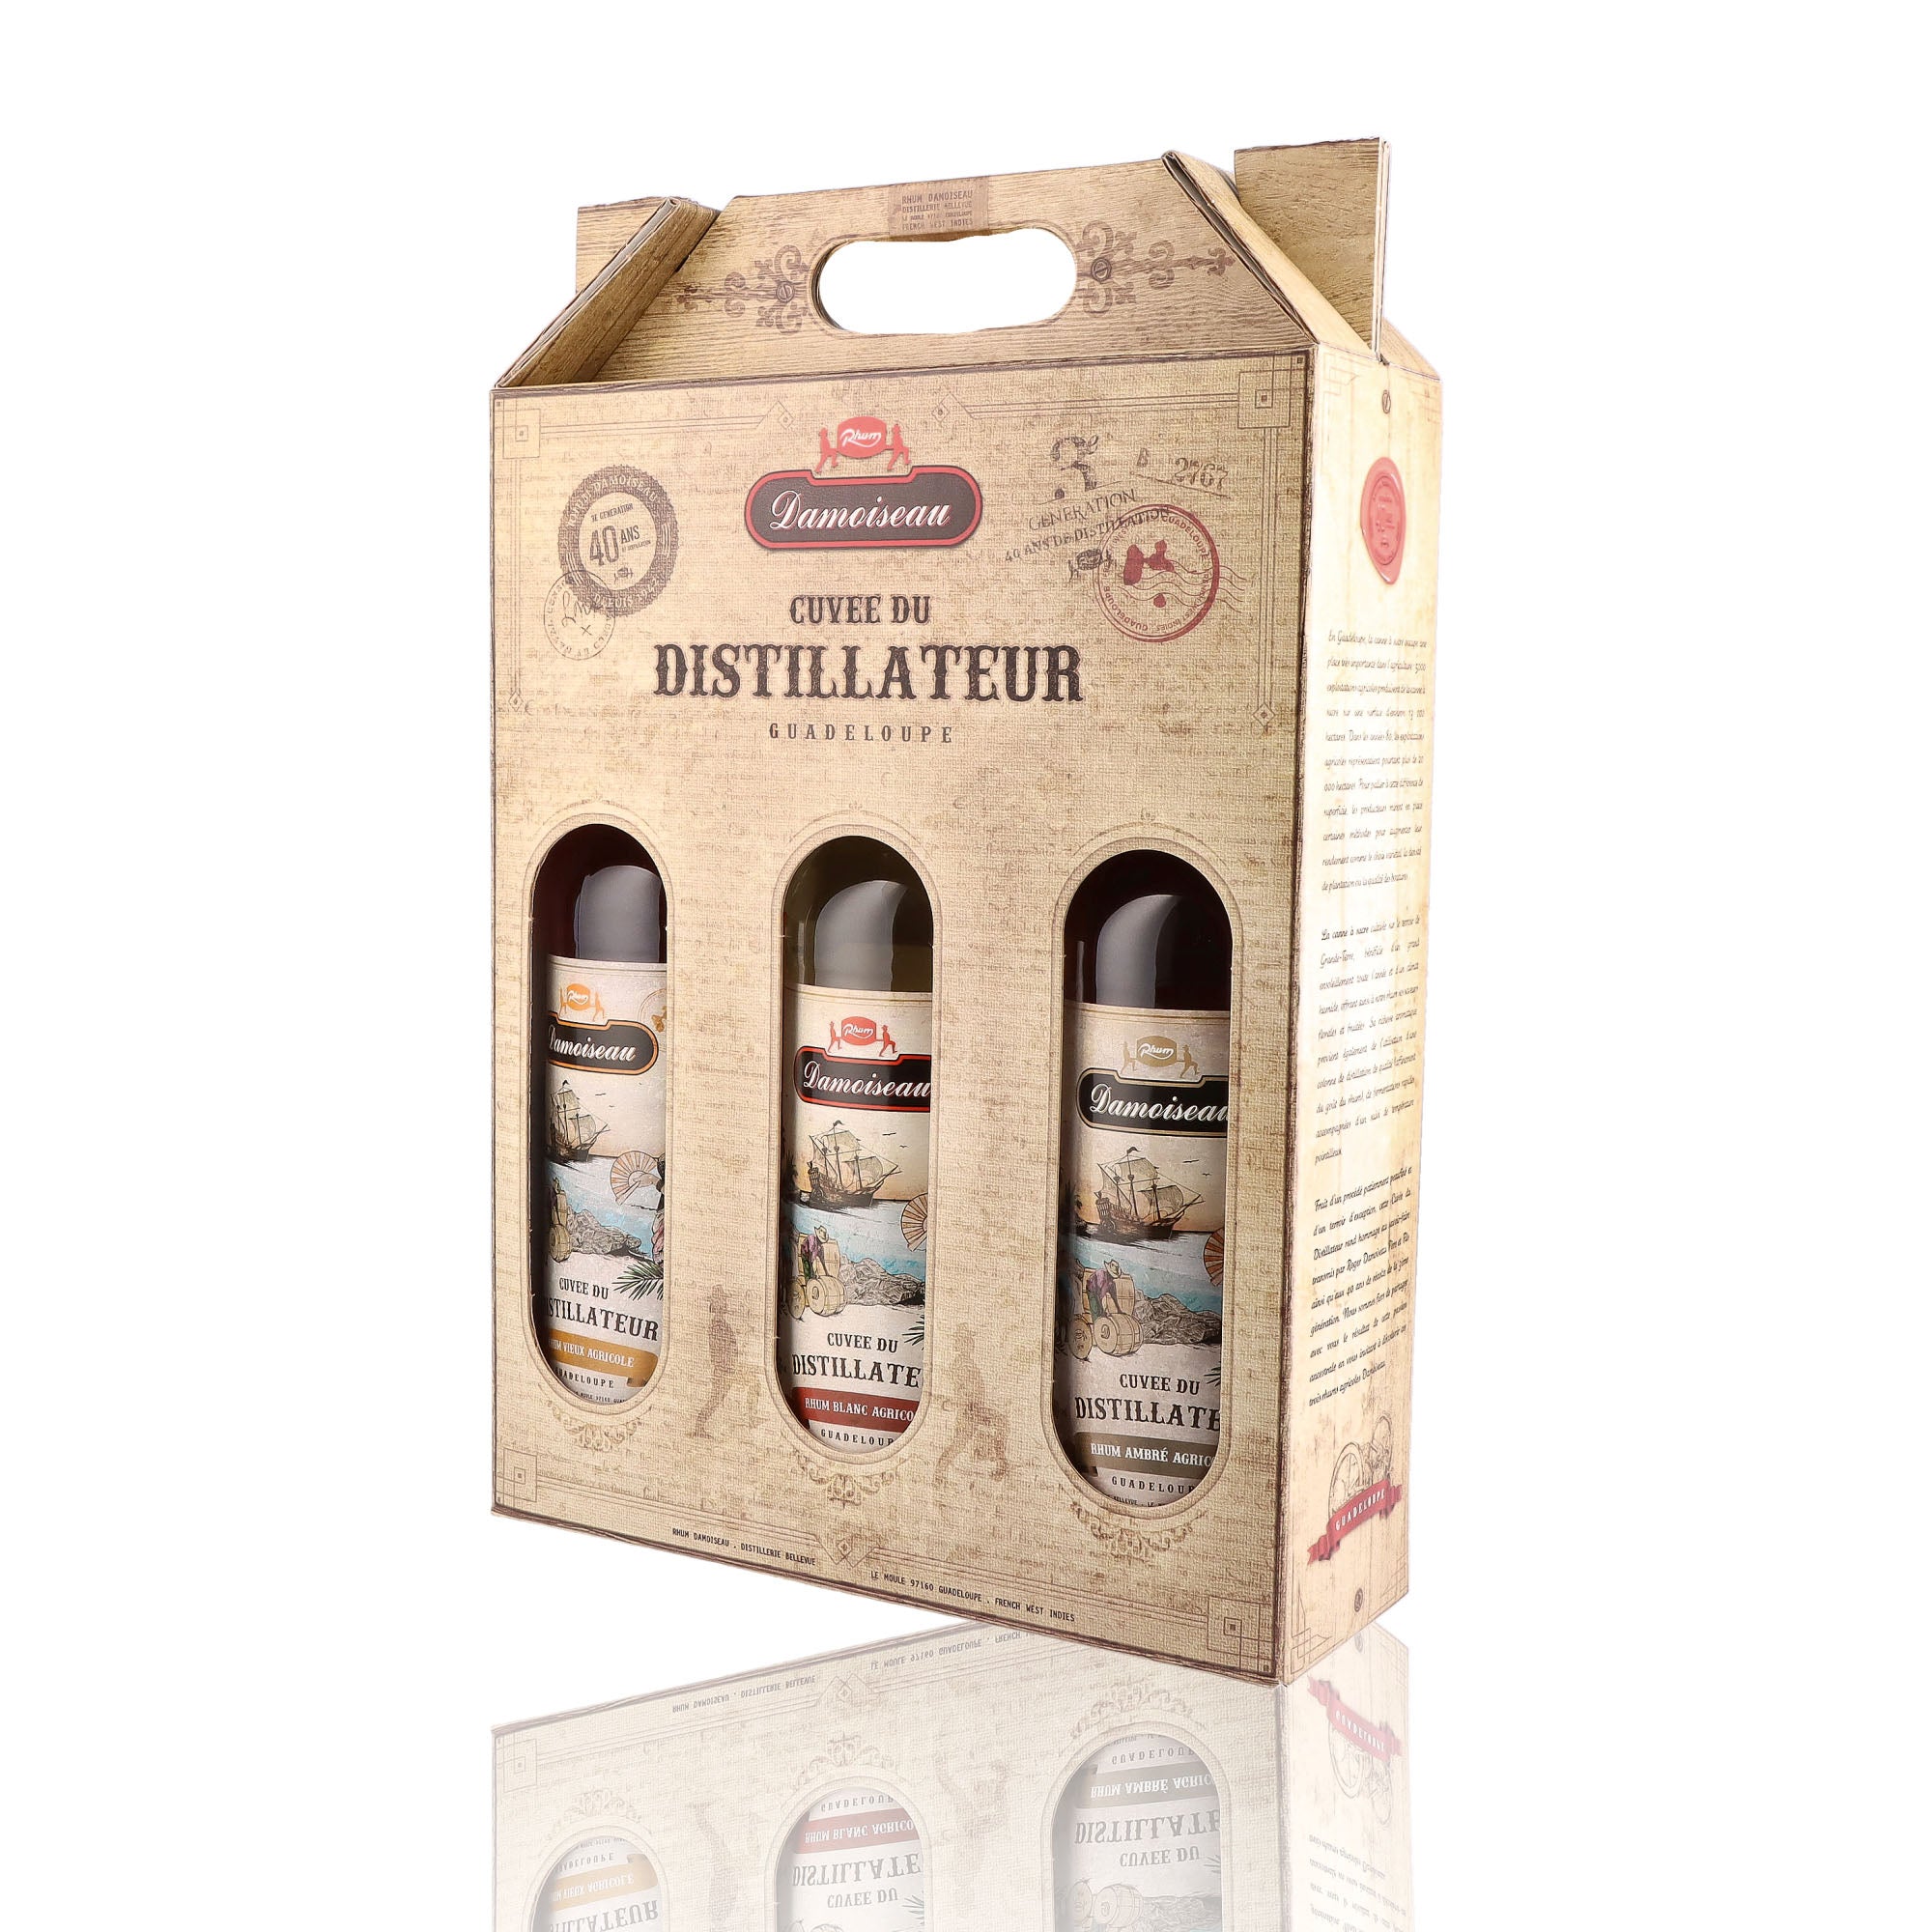 Un coffret de rhum agricole, de la marque Damoiseau, nommée Cuvée du Distillateur, 3 bouteilles.